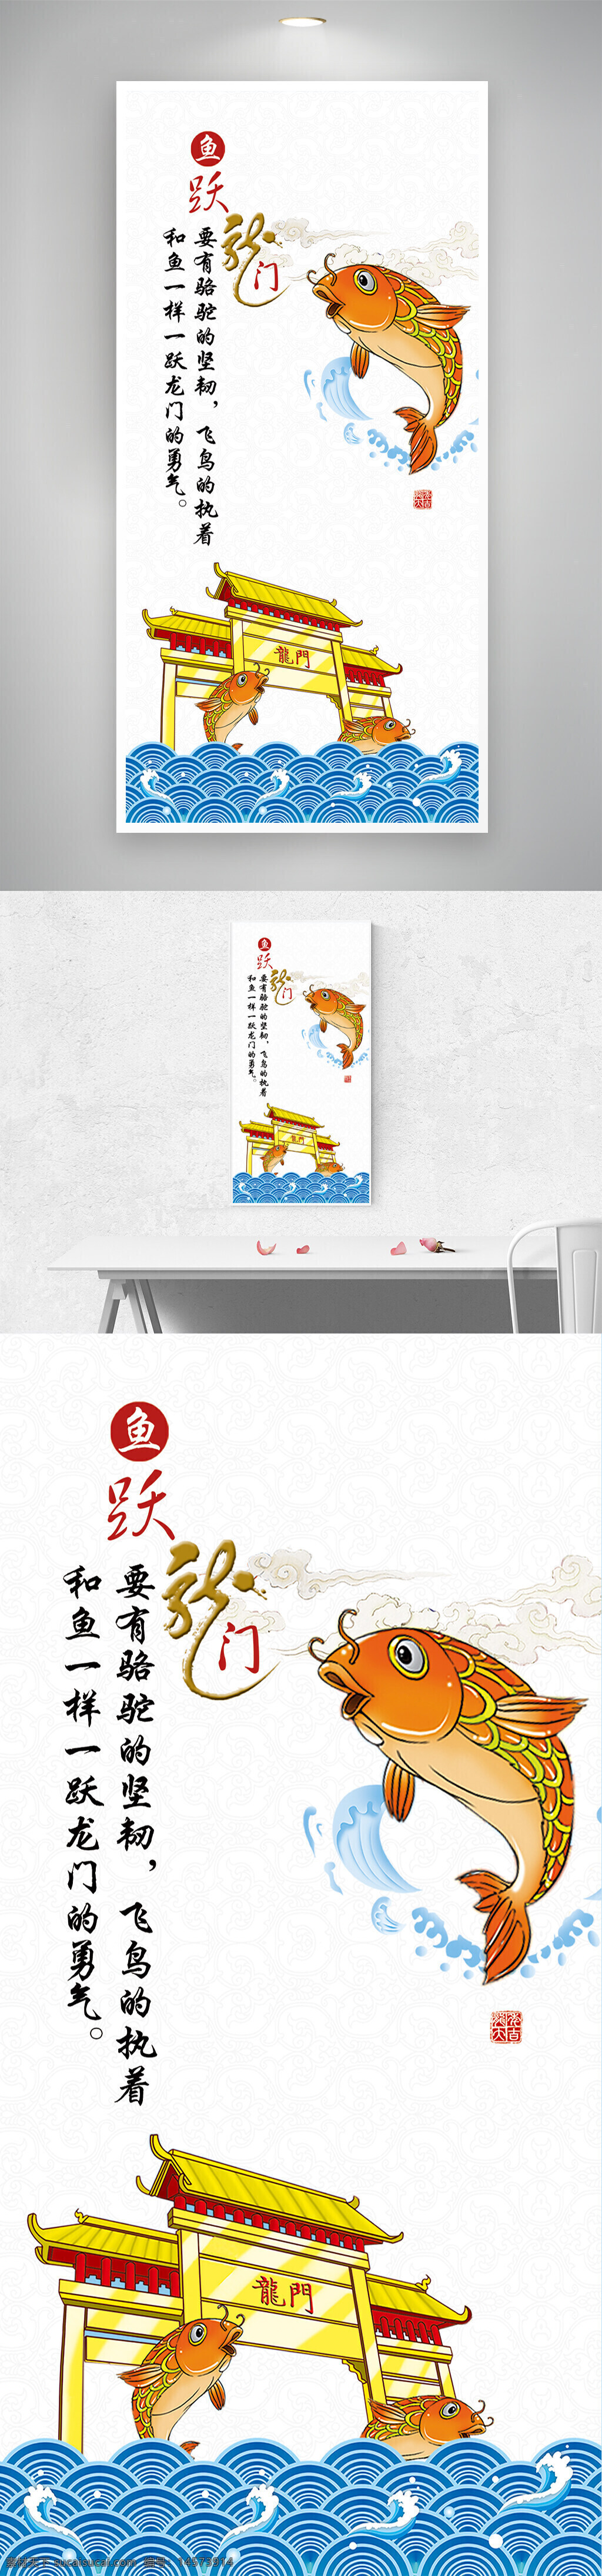 海报 鱼跃龙门 鲤鱼 龙门 海水 广告设计